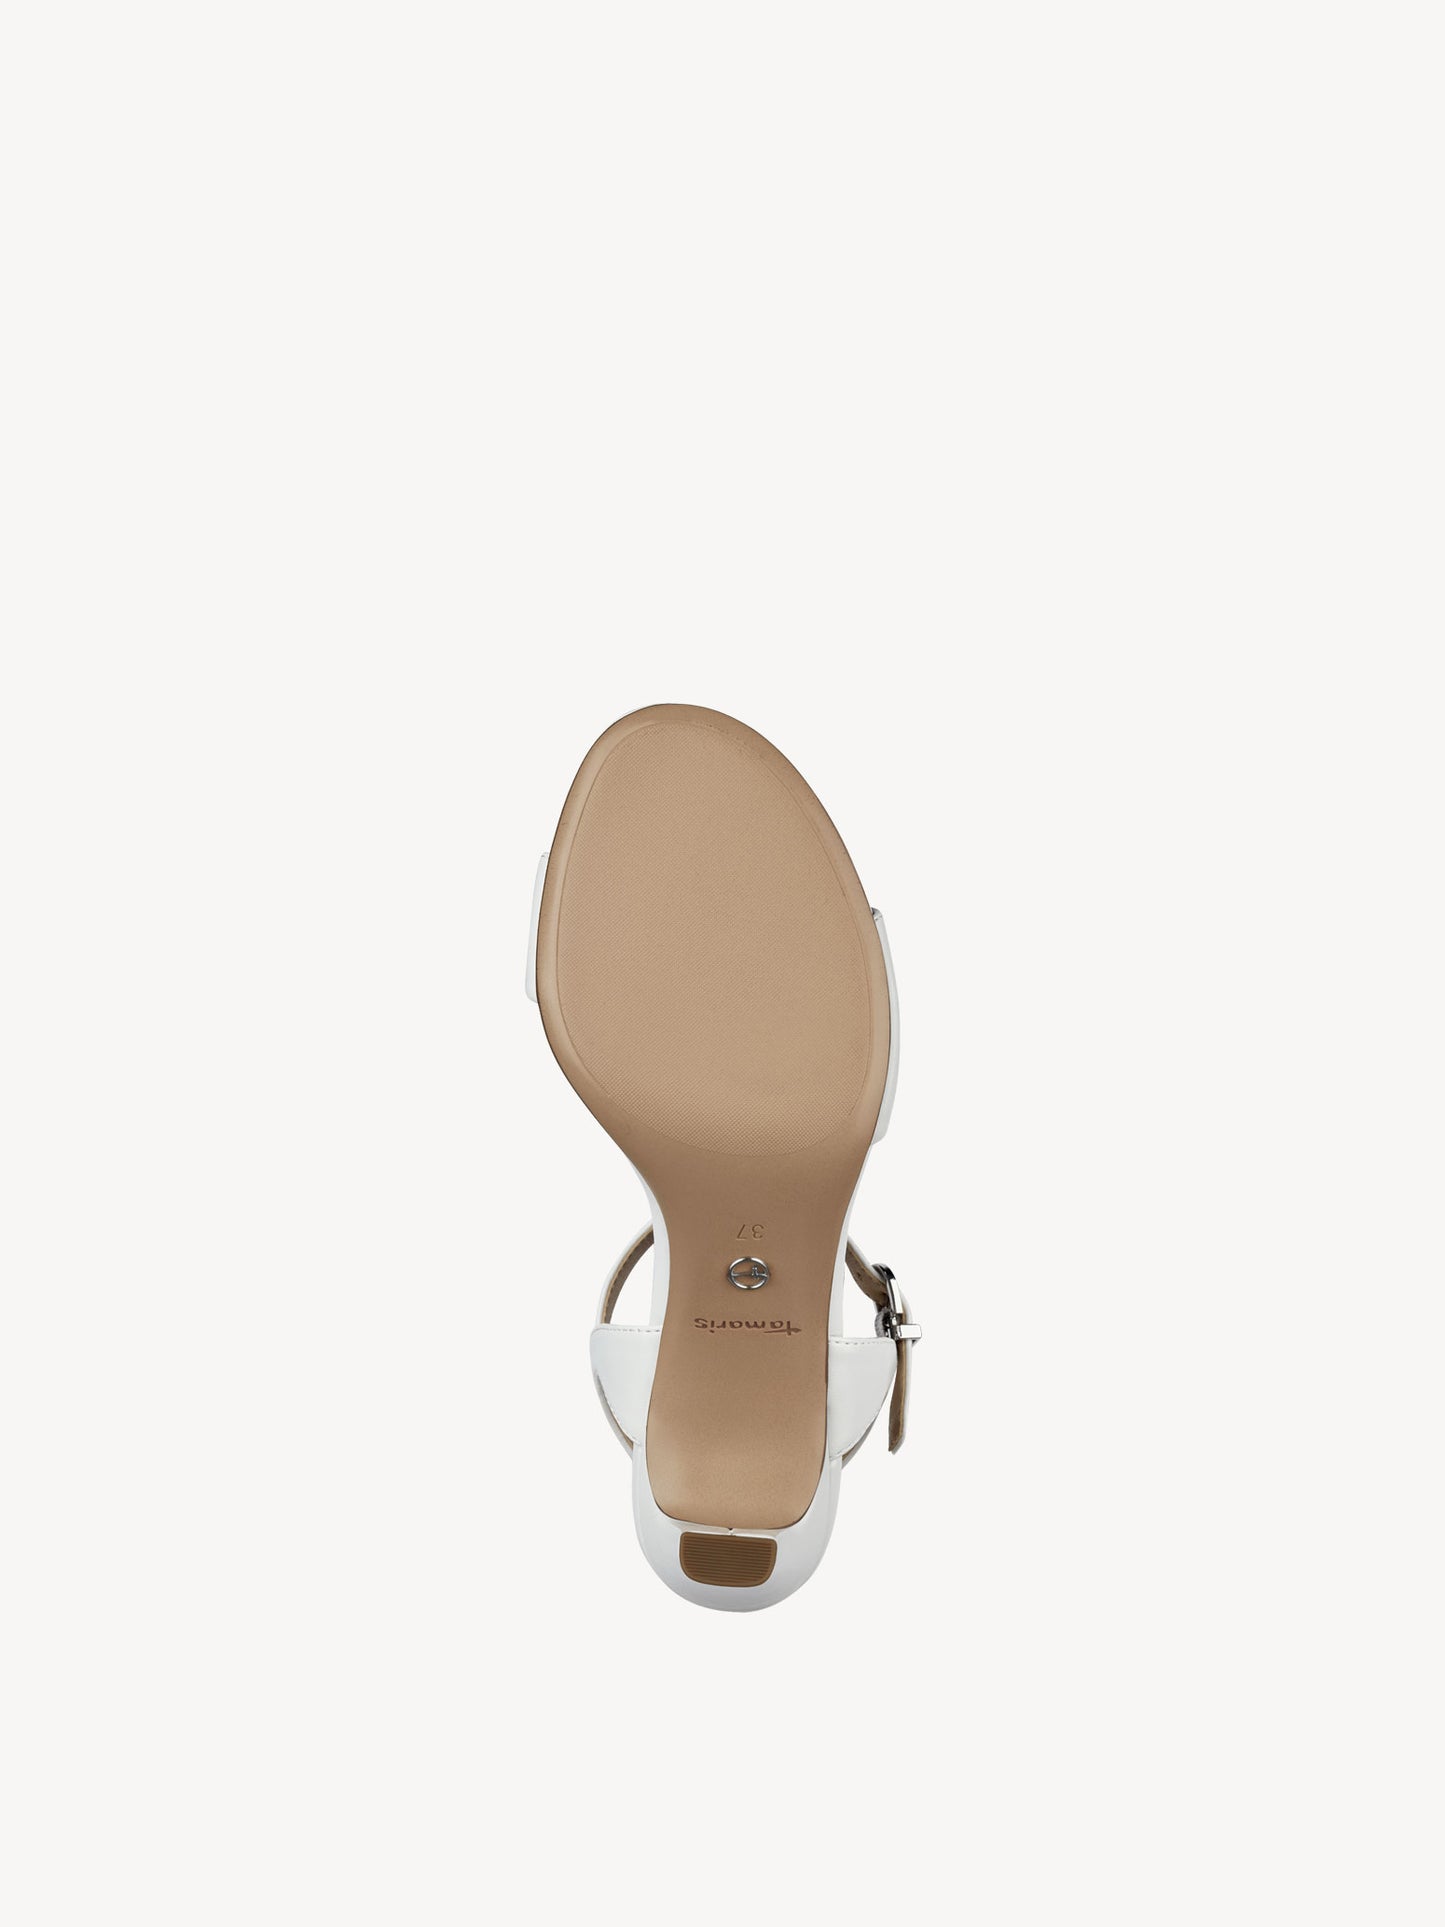 Tamaris sandal 28008 white leather